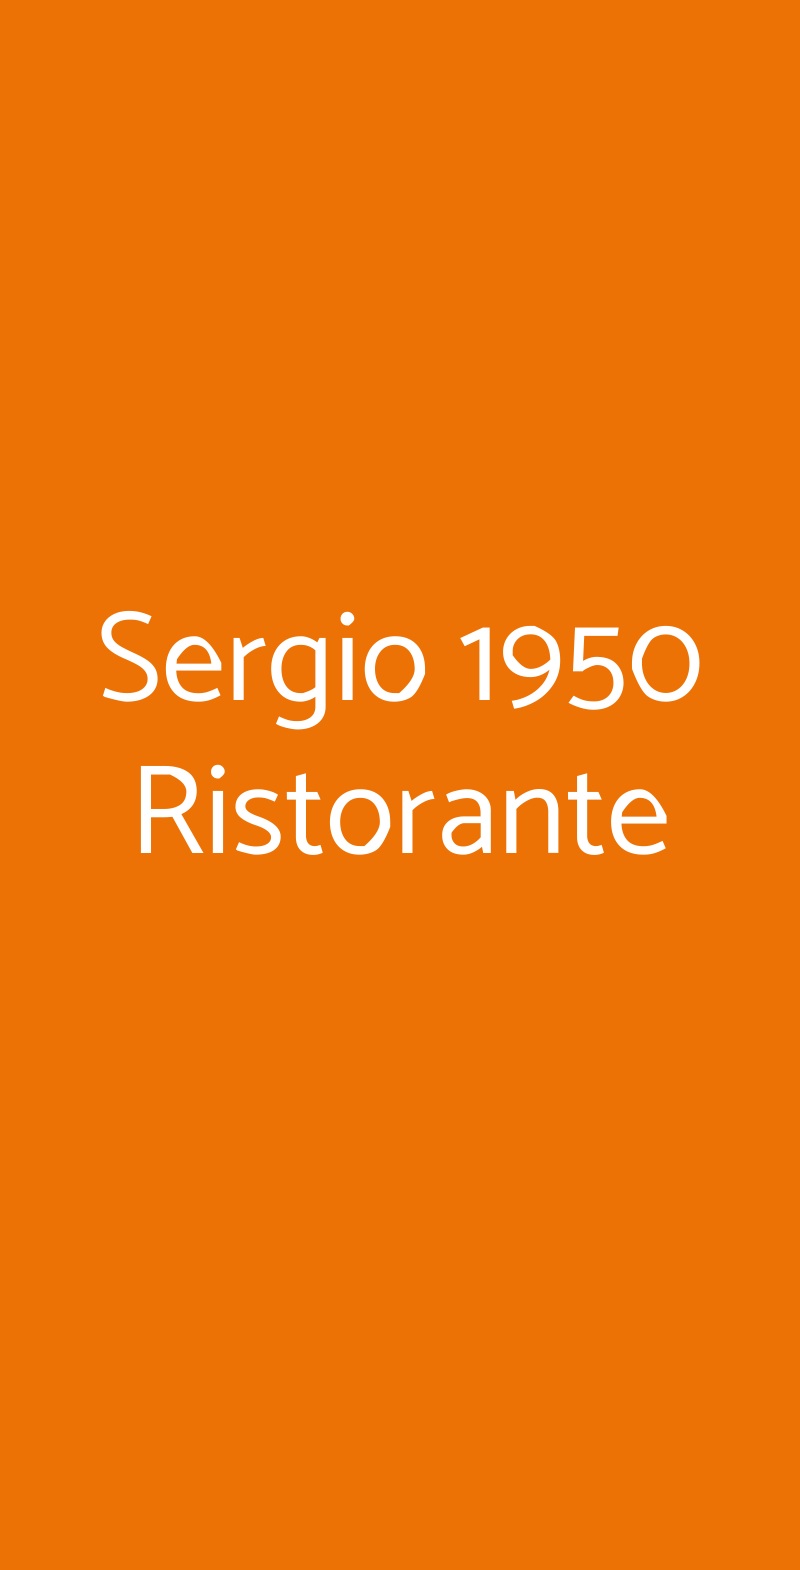 Sergio 1950 Ristorante Varese menù 1 pagina